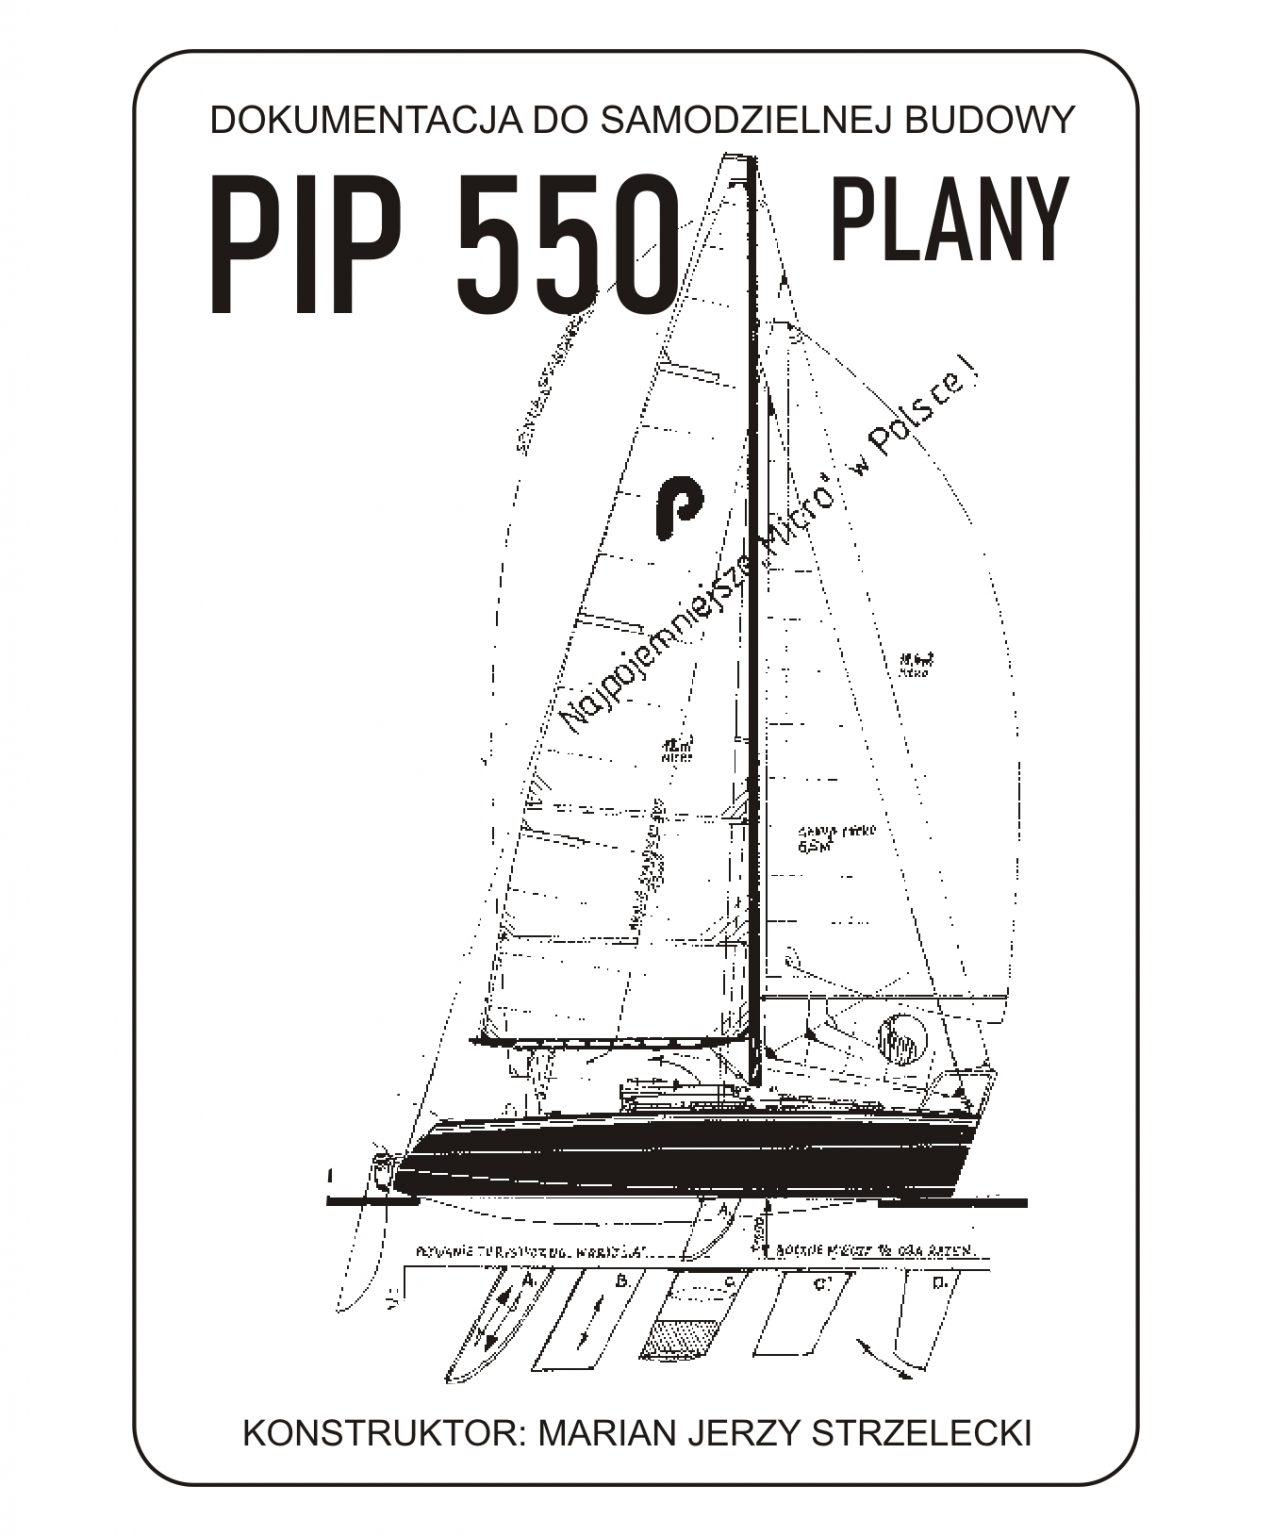 pip-550-plany-plany-jacht-w